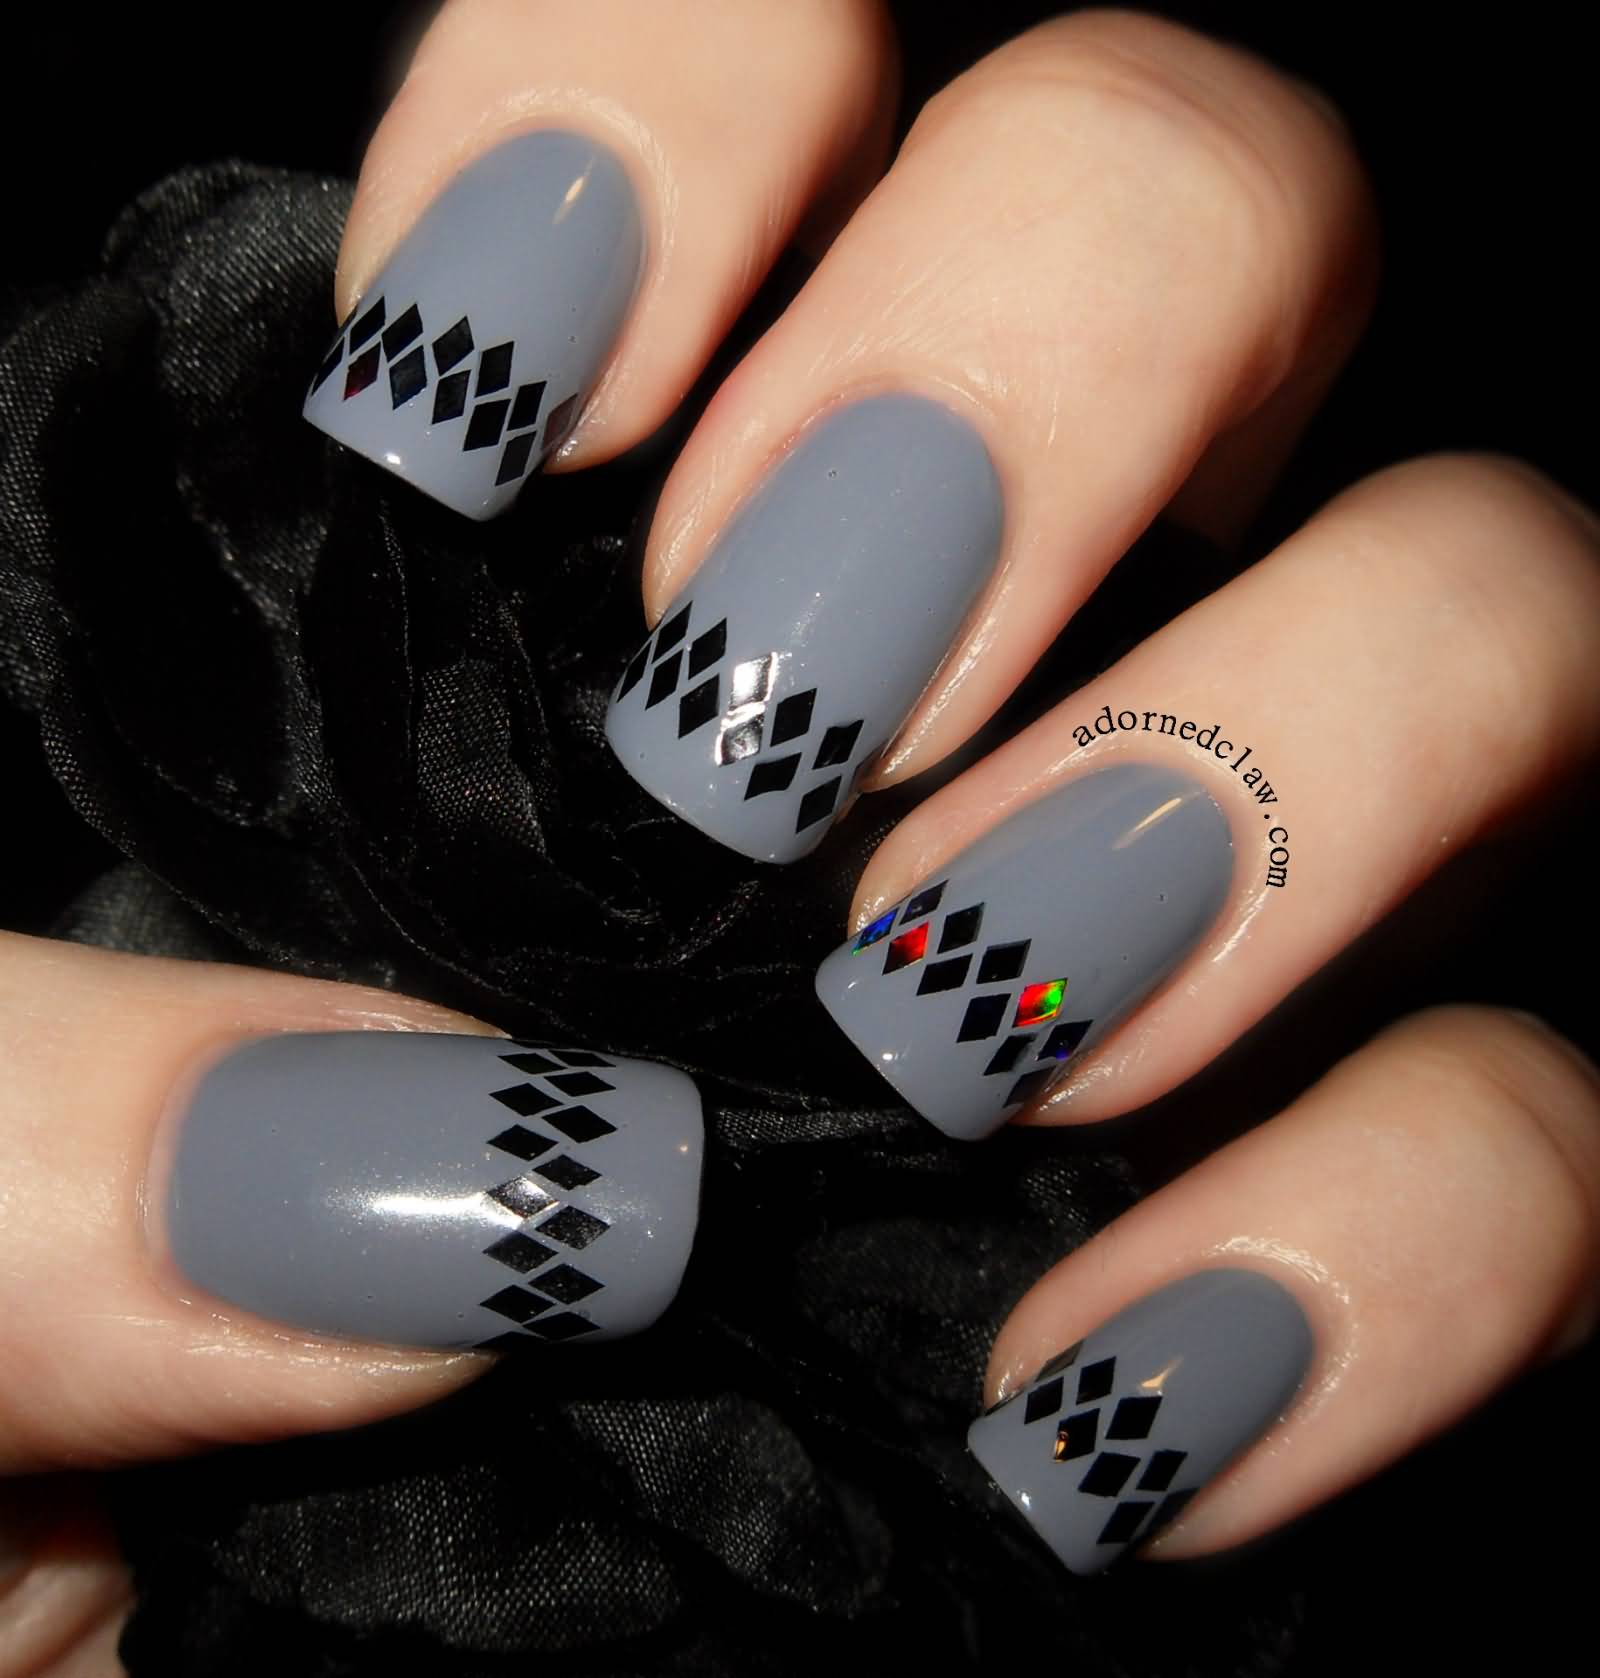 Gray Nails With Black Design Nail Art